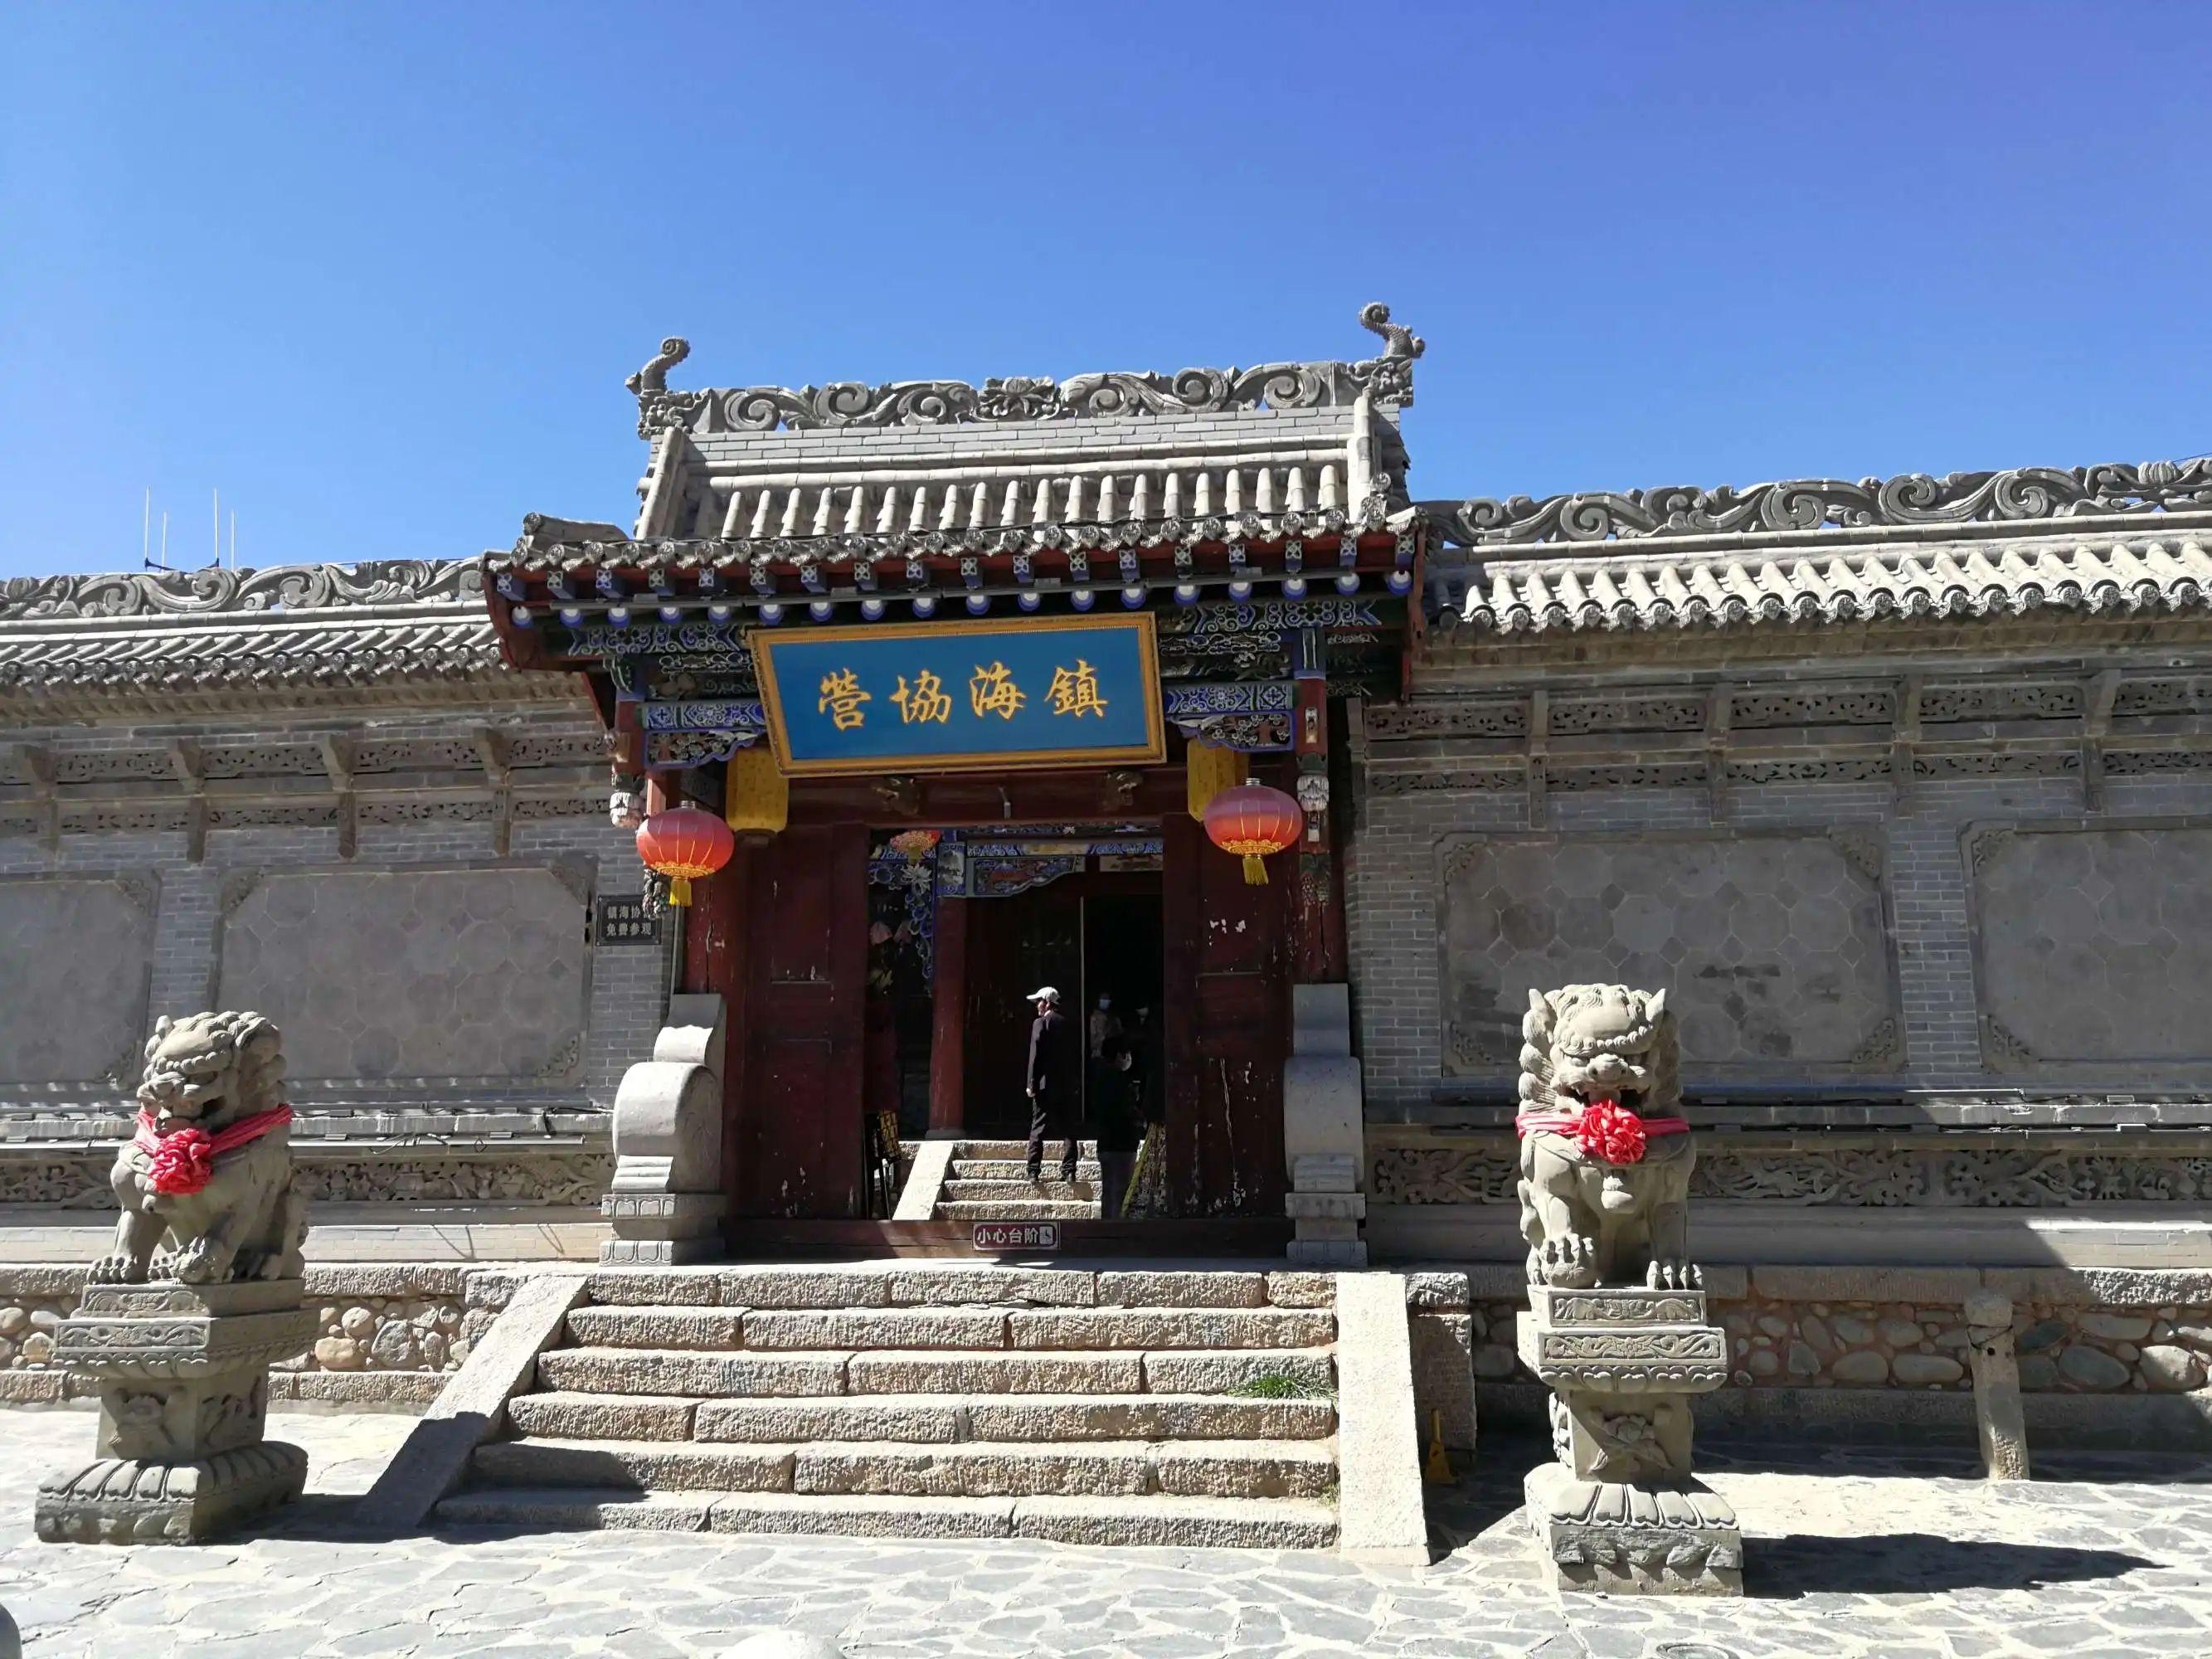 店铺林立,出售很多青海本地的旅游纪念品,藏族特产等